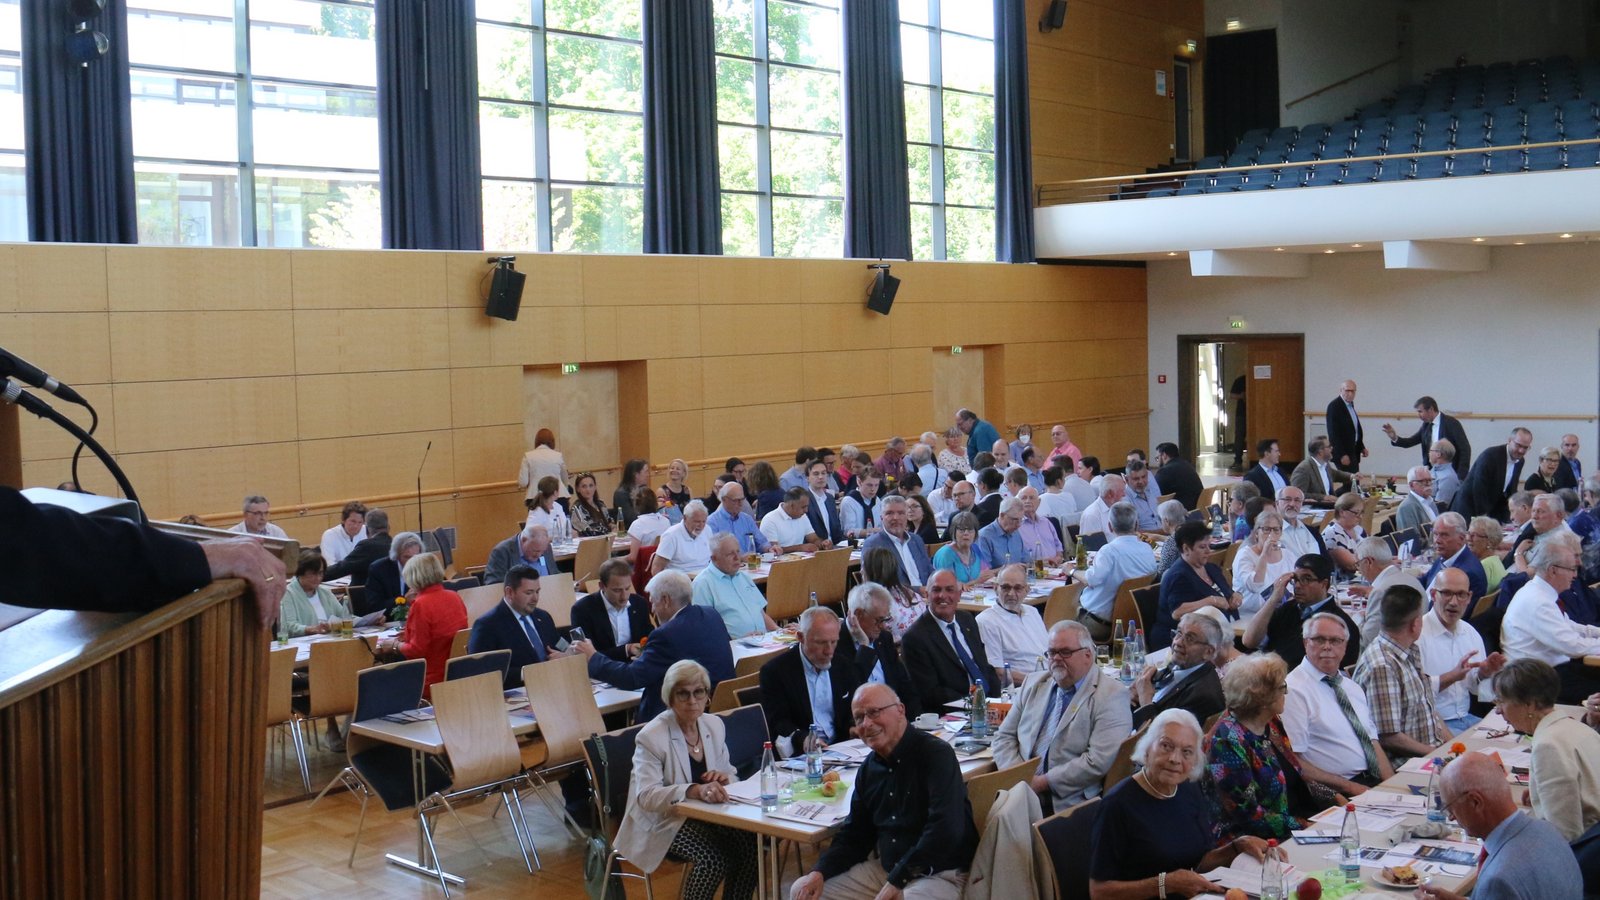 Der Kreisvorsitzende Rainer Wieland begrüßte die Gäste des Parteitags des CDU-Kreisverbands in der Vaihinger Stadthalle.  Fotos: Rücker